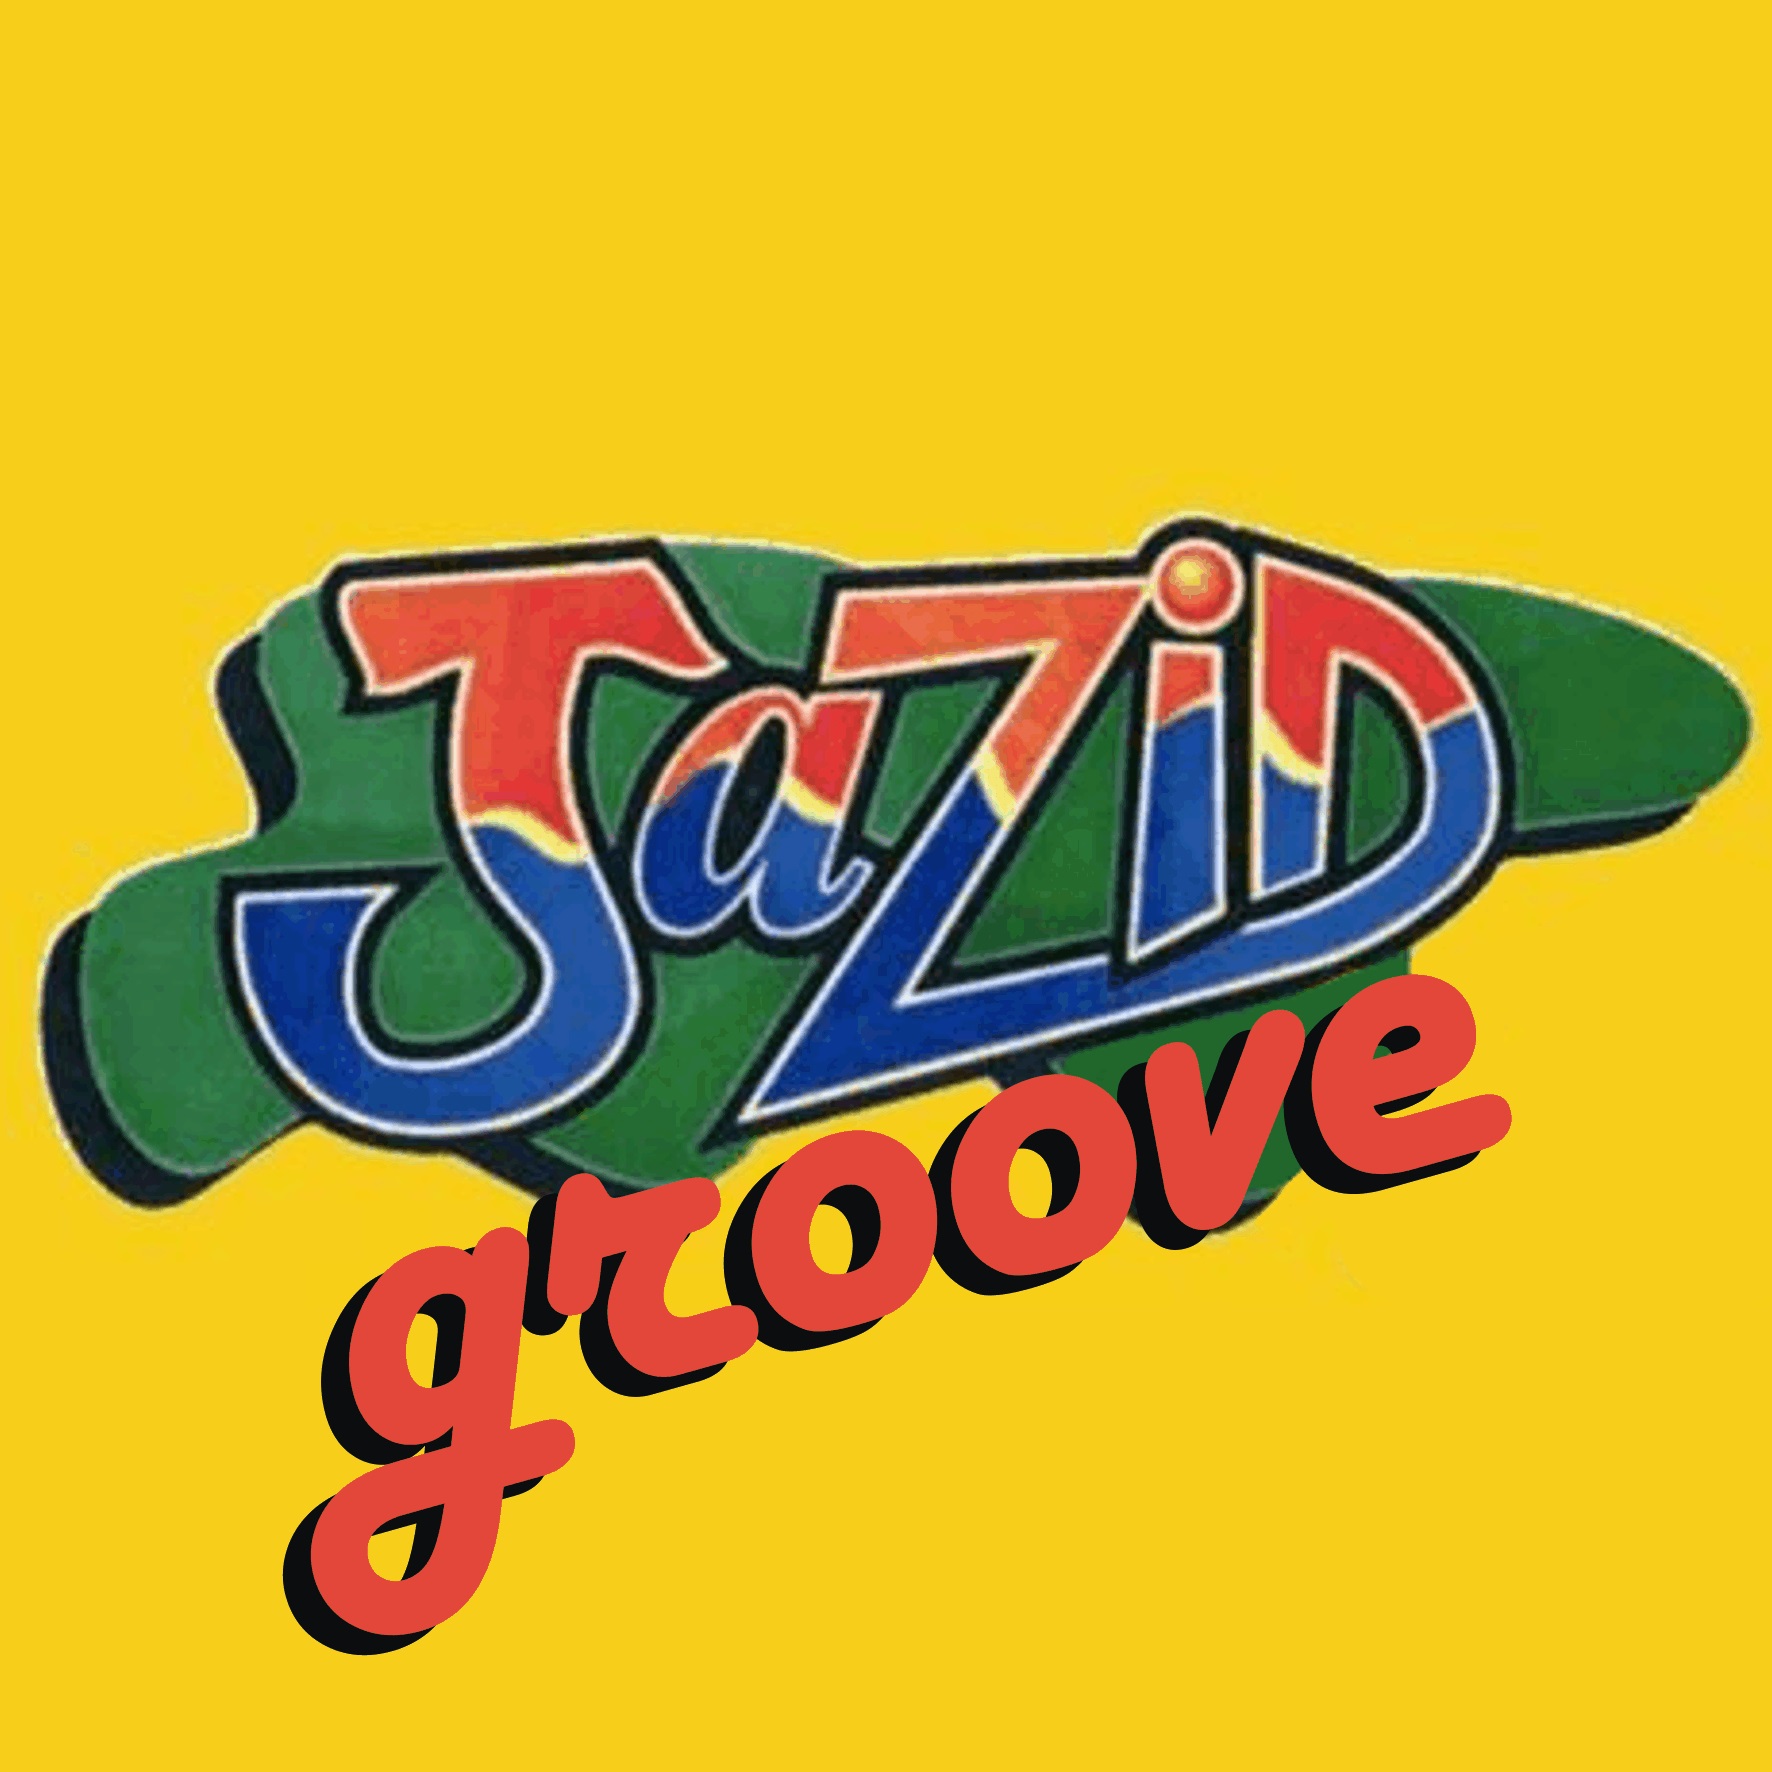 Jazid Groove 74